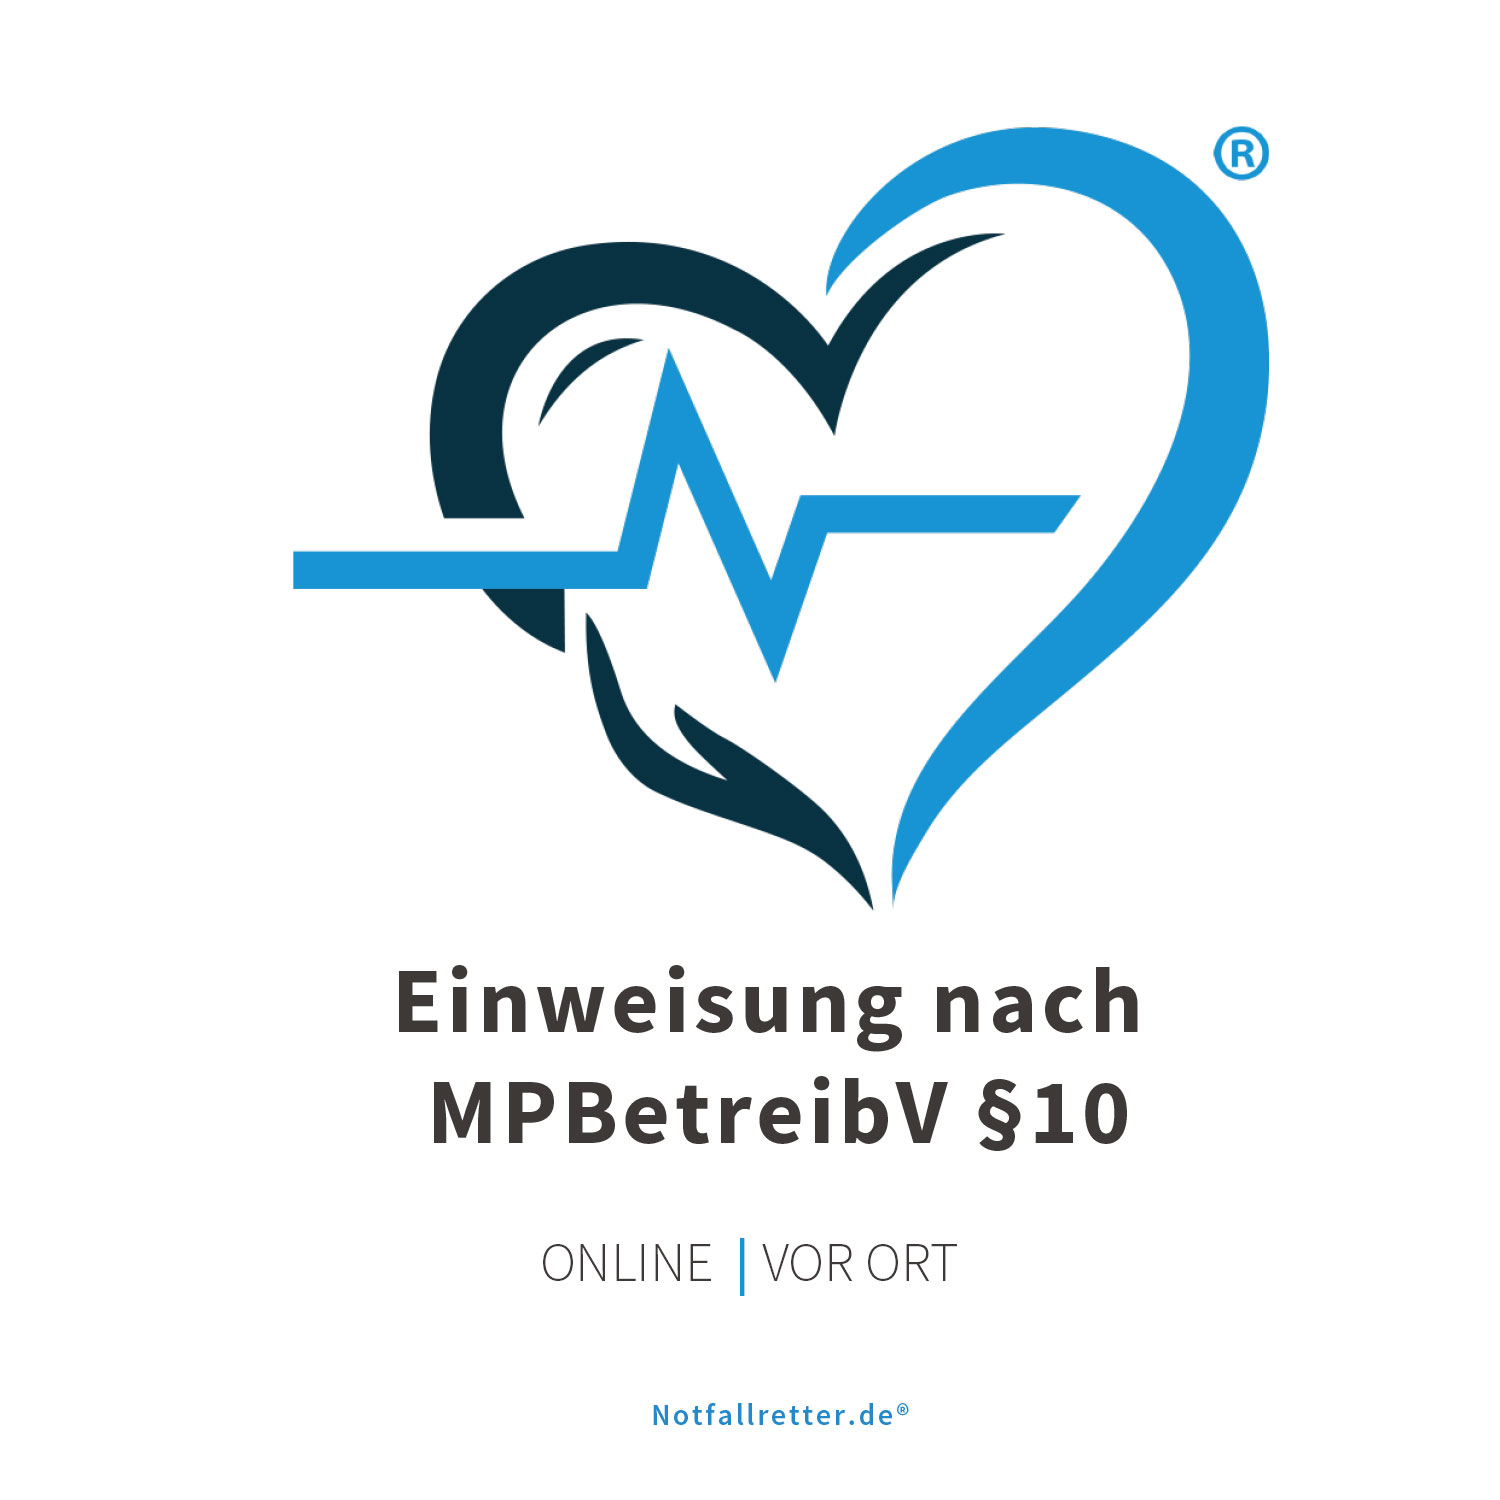 Defibrillator AED Einweisung nach MPBetreibV §10